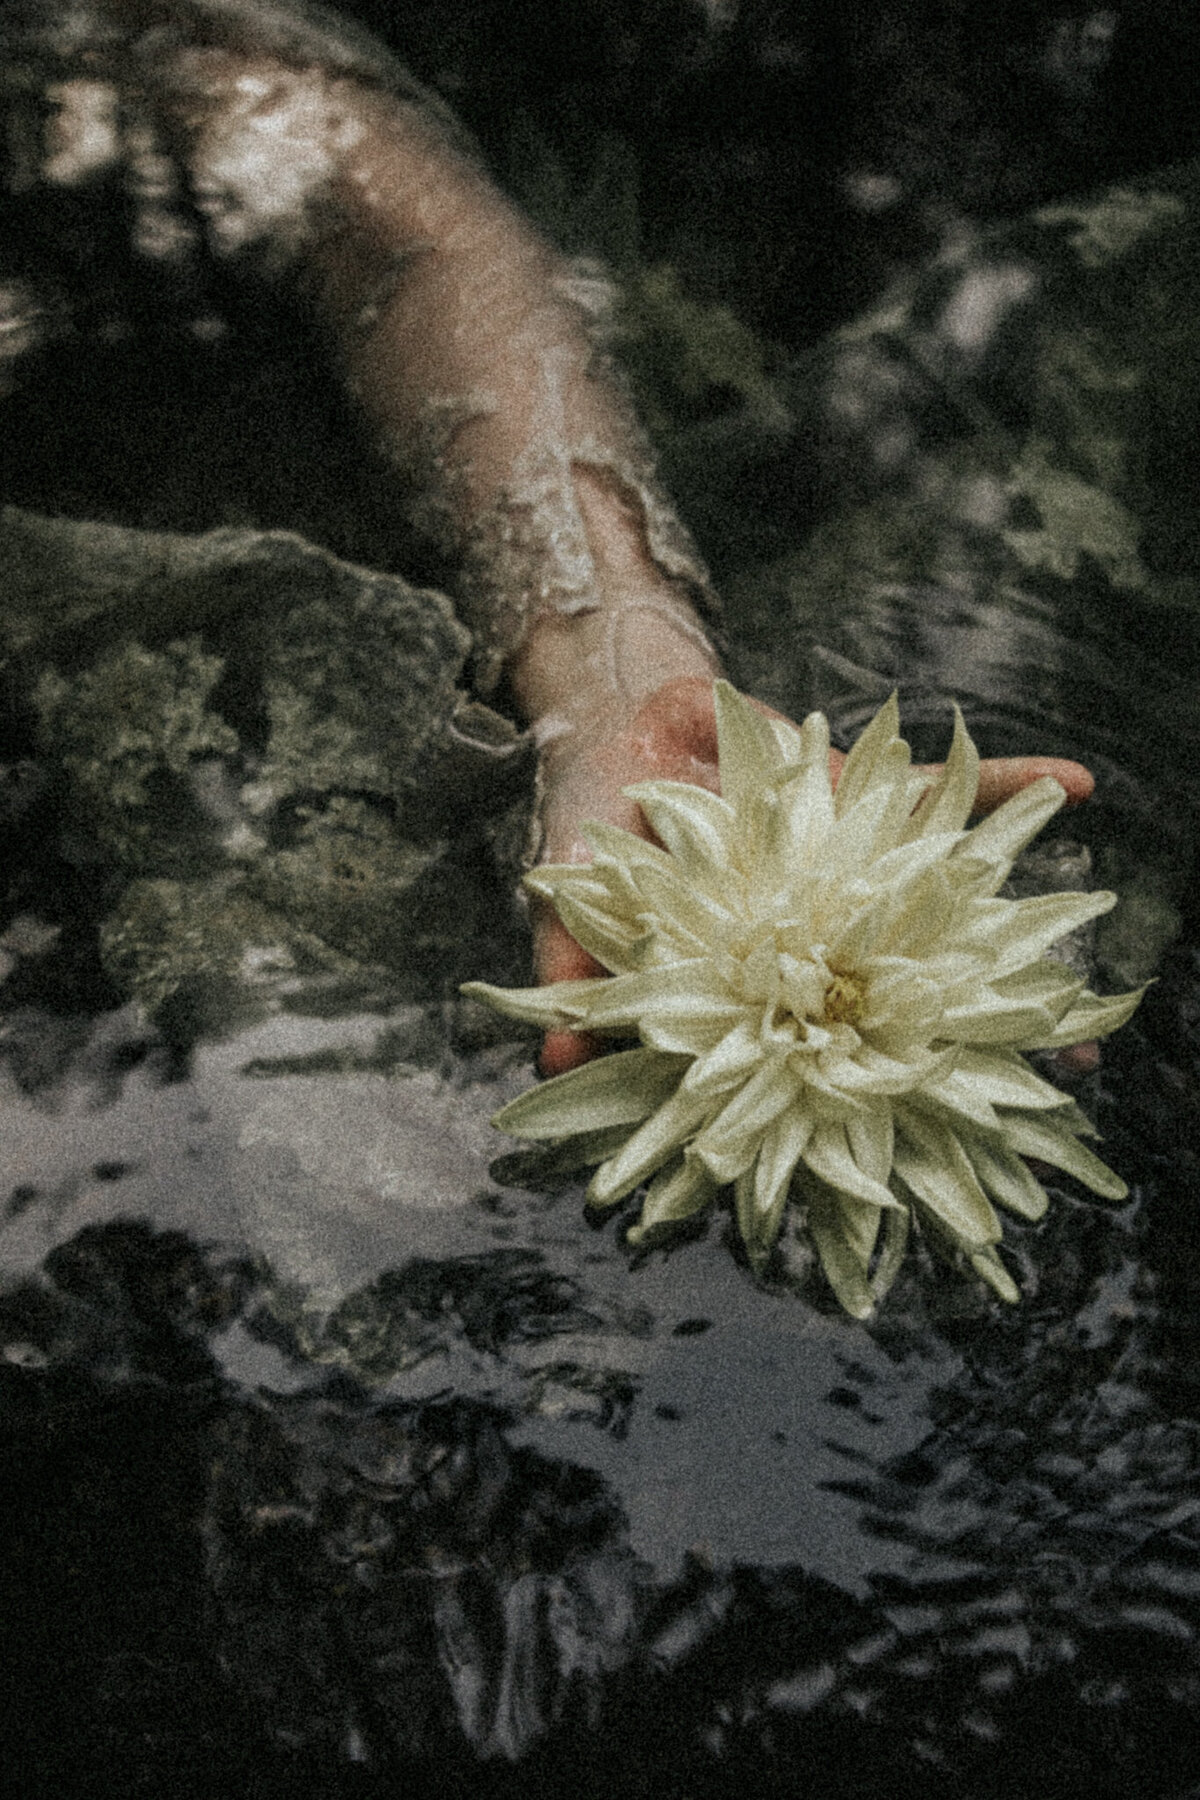 Flower in hand in dark waters